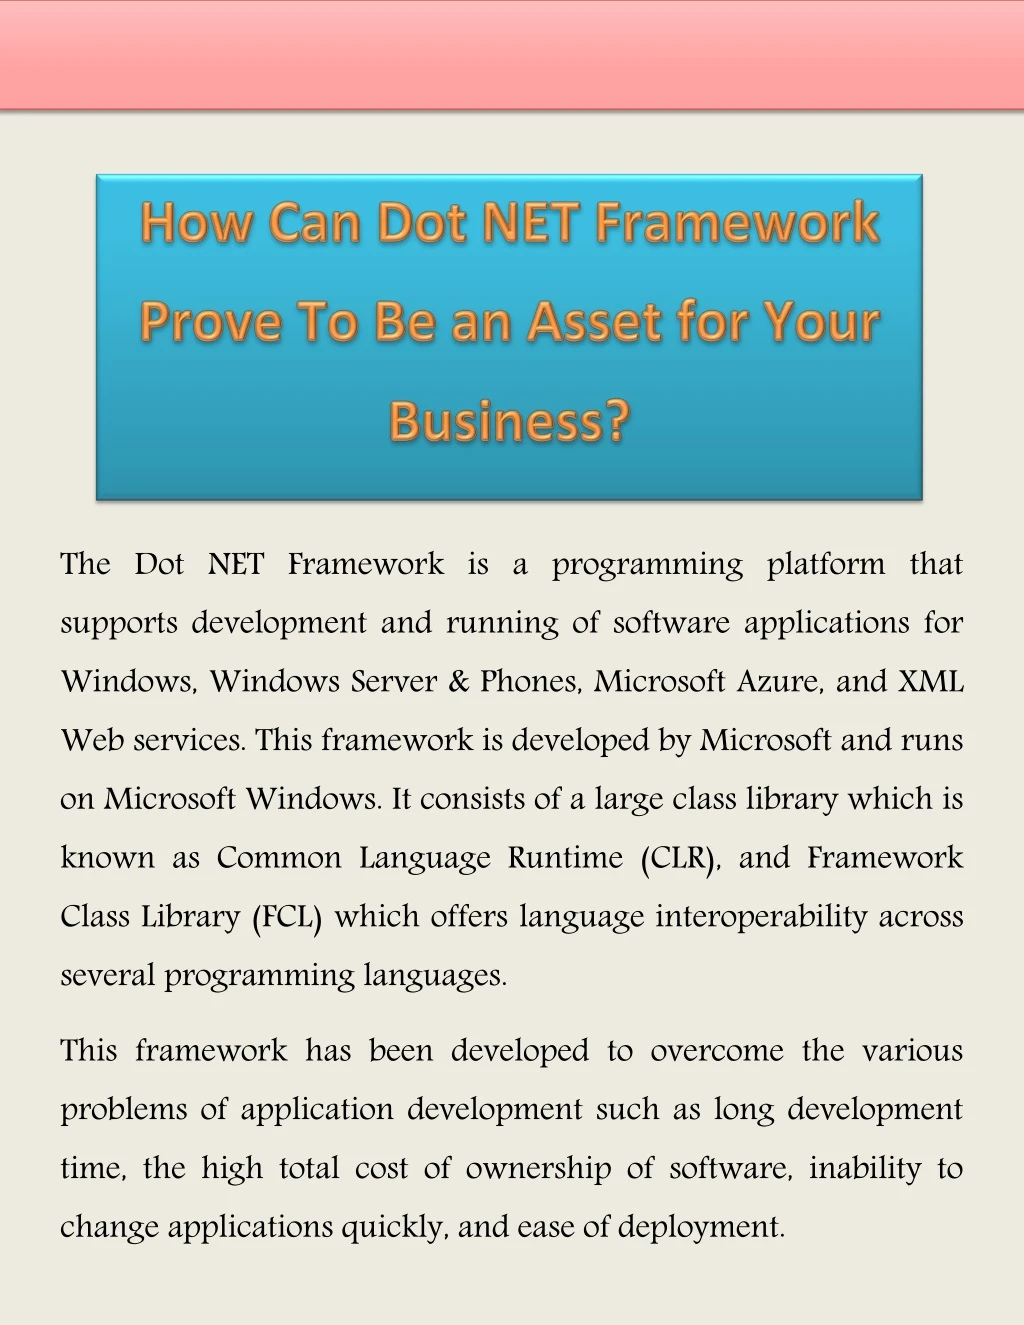 the dot net framework is a programming platform